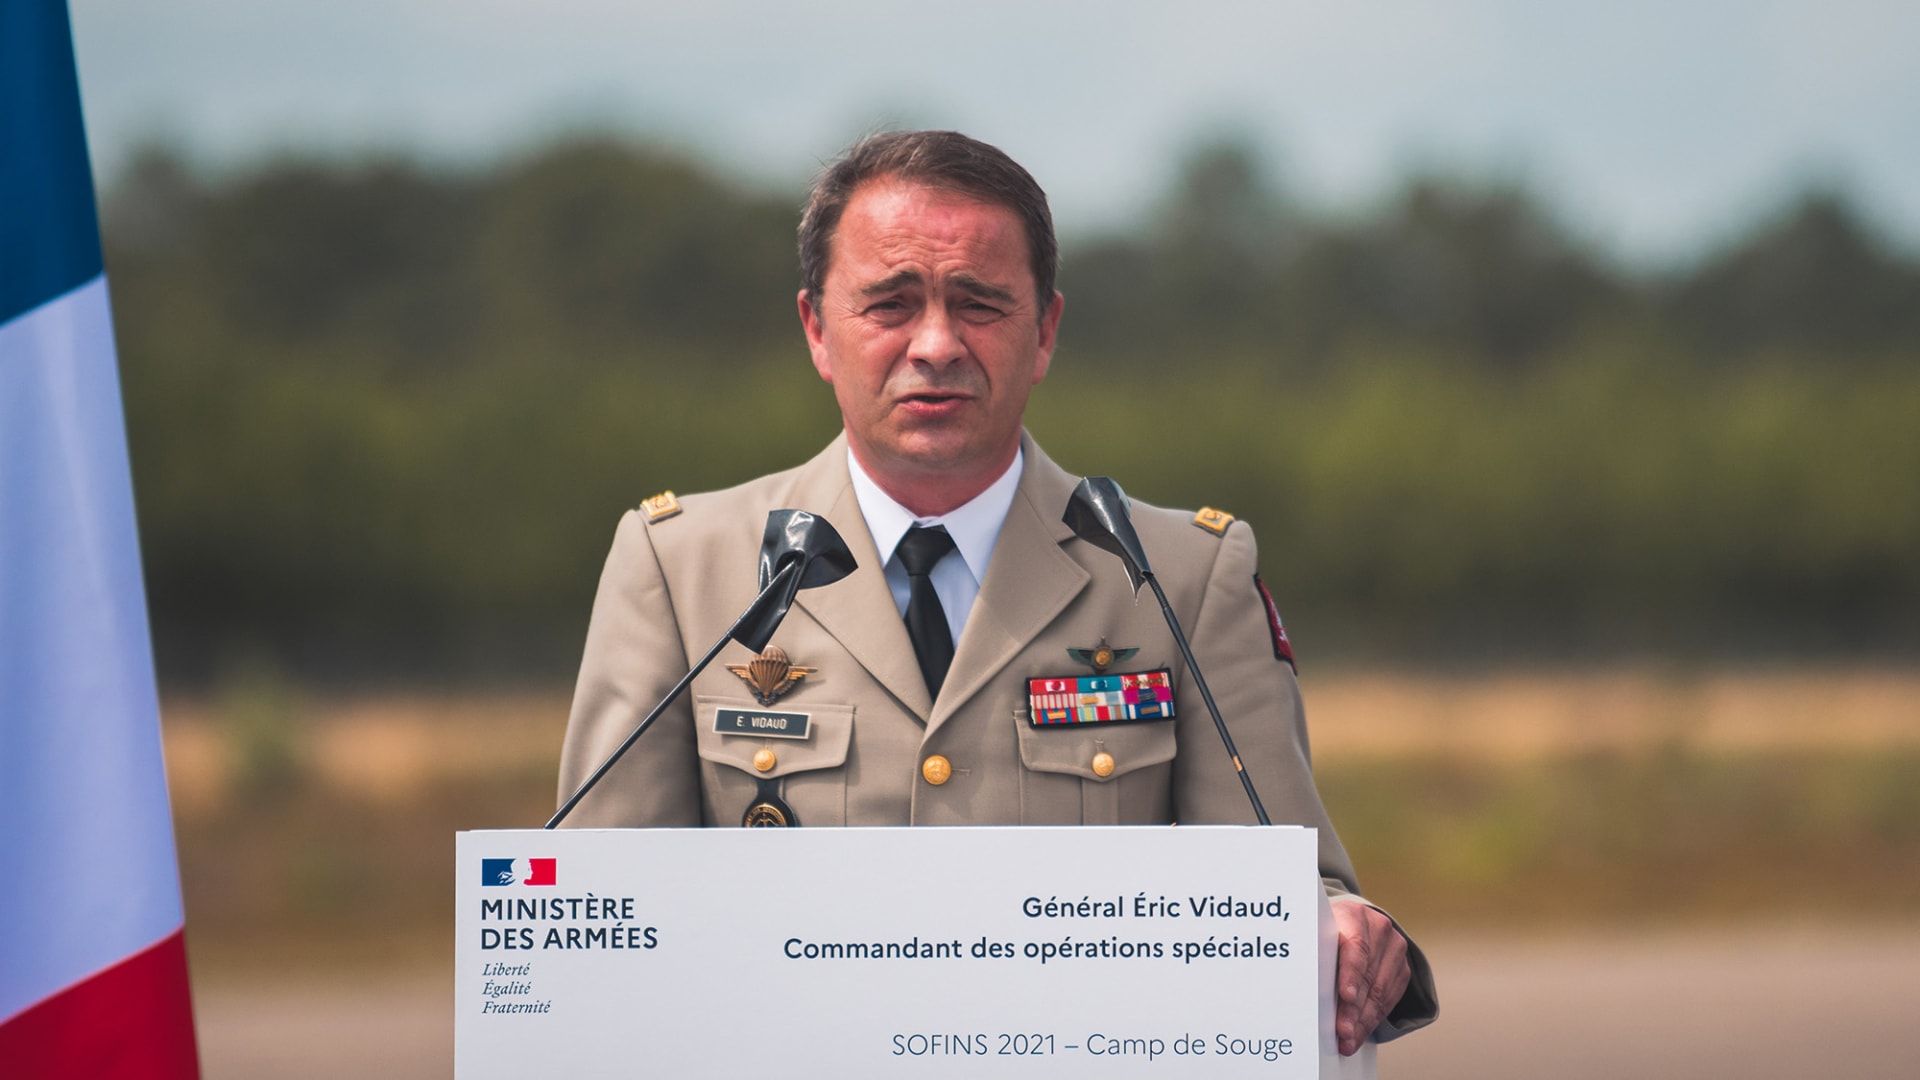 رئيس الاستخبارات العسكرية الفرنسية، الجنرال إريك فيدود